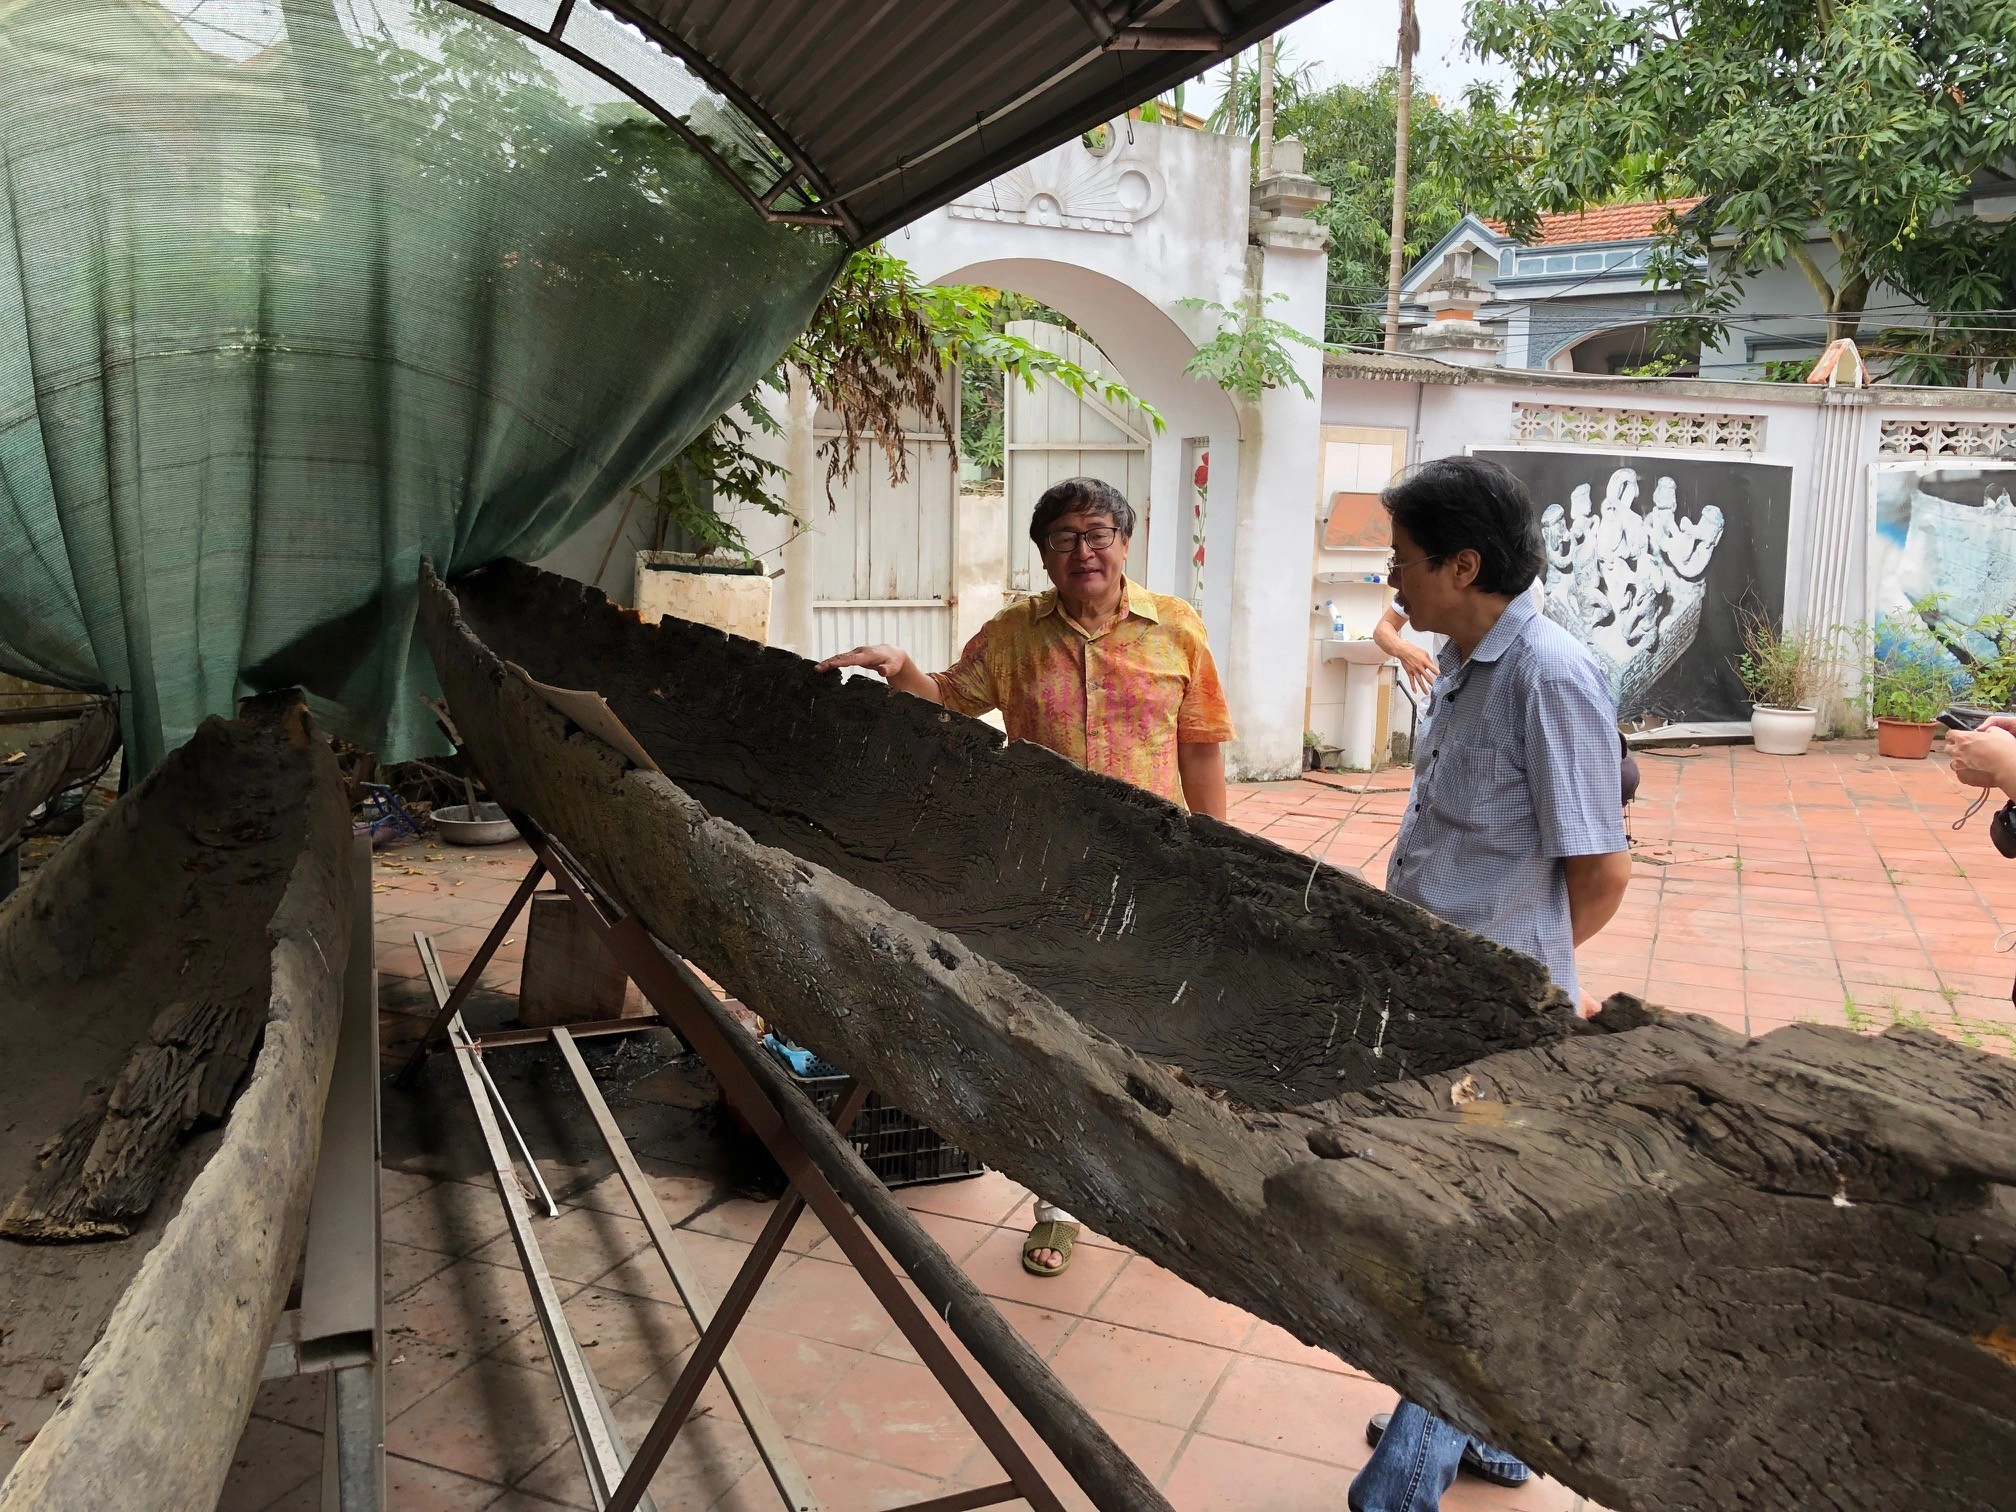 Bảo tàng Phạm Huy Thông – Bảo tàng thuyền cổ độc nhất vô nhị